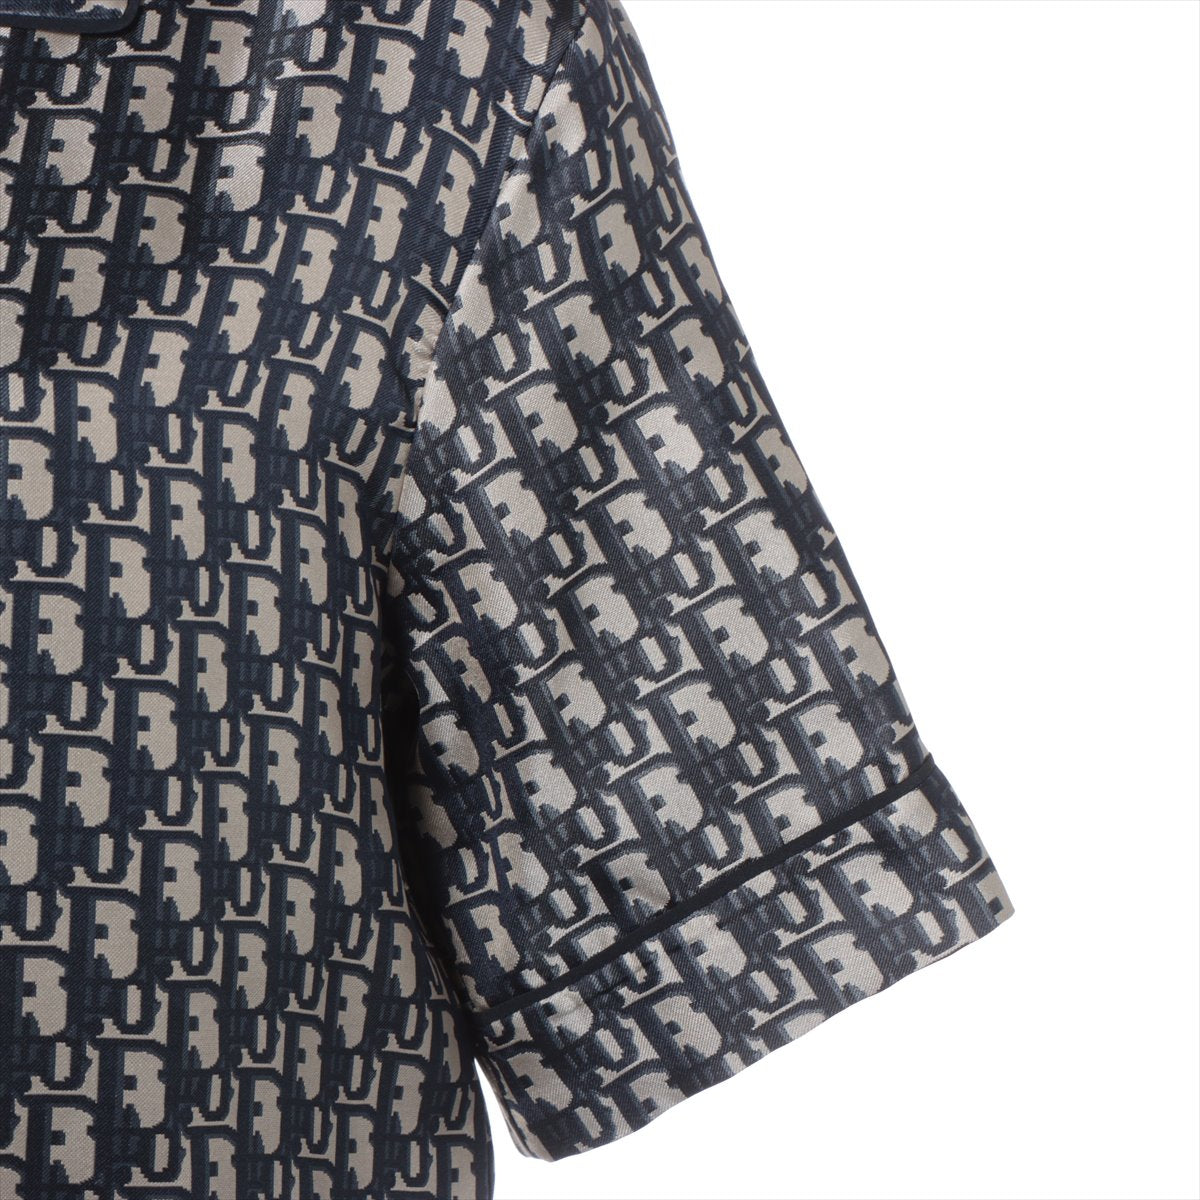 Christian Dior Oblique Silk Shirt I40 Ladies' Navy Blue  Dior Chez Moi short sleeve Shirt 121V46A6608